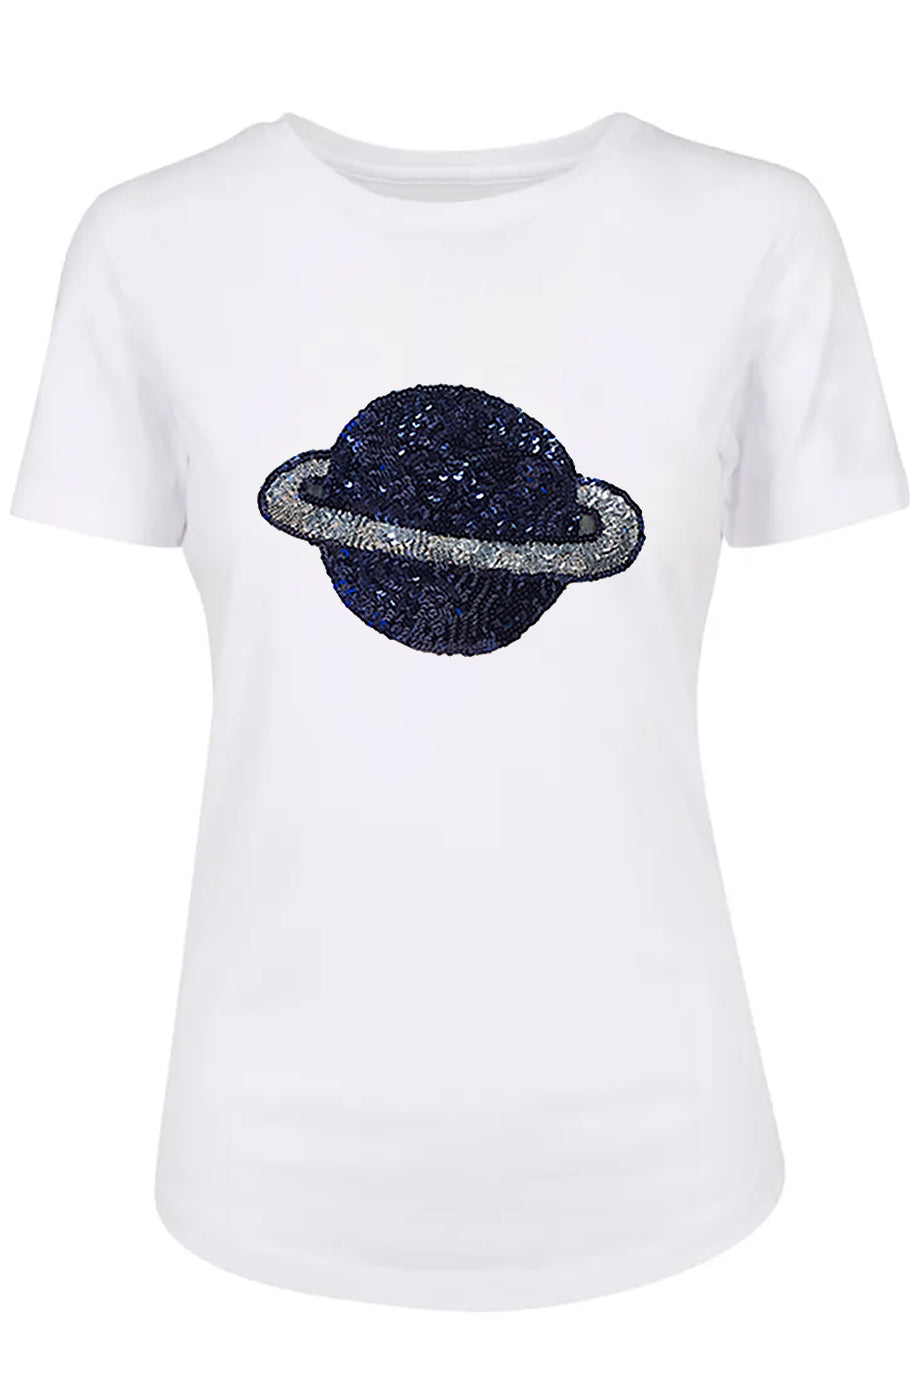 Άσπρο Μπλουζάκι με 3D Σχέδιο | Γυναικεία Ρούχα T-Shirts - Estelle